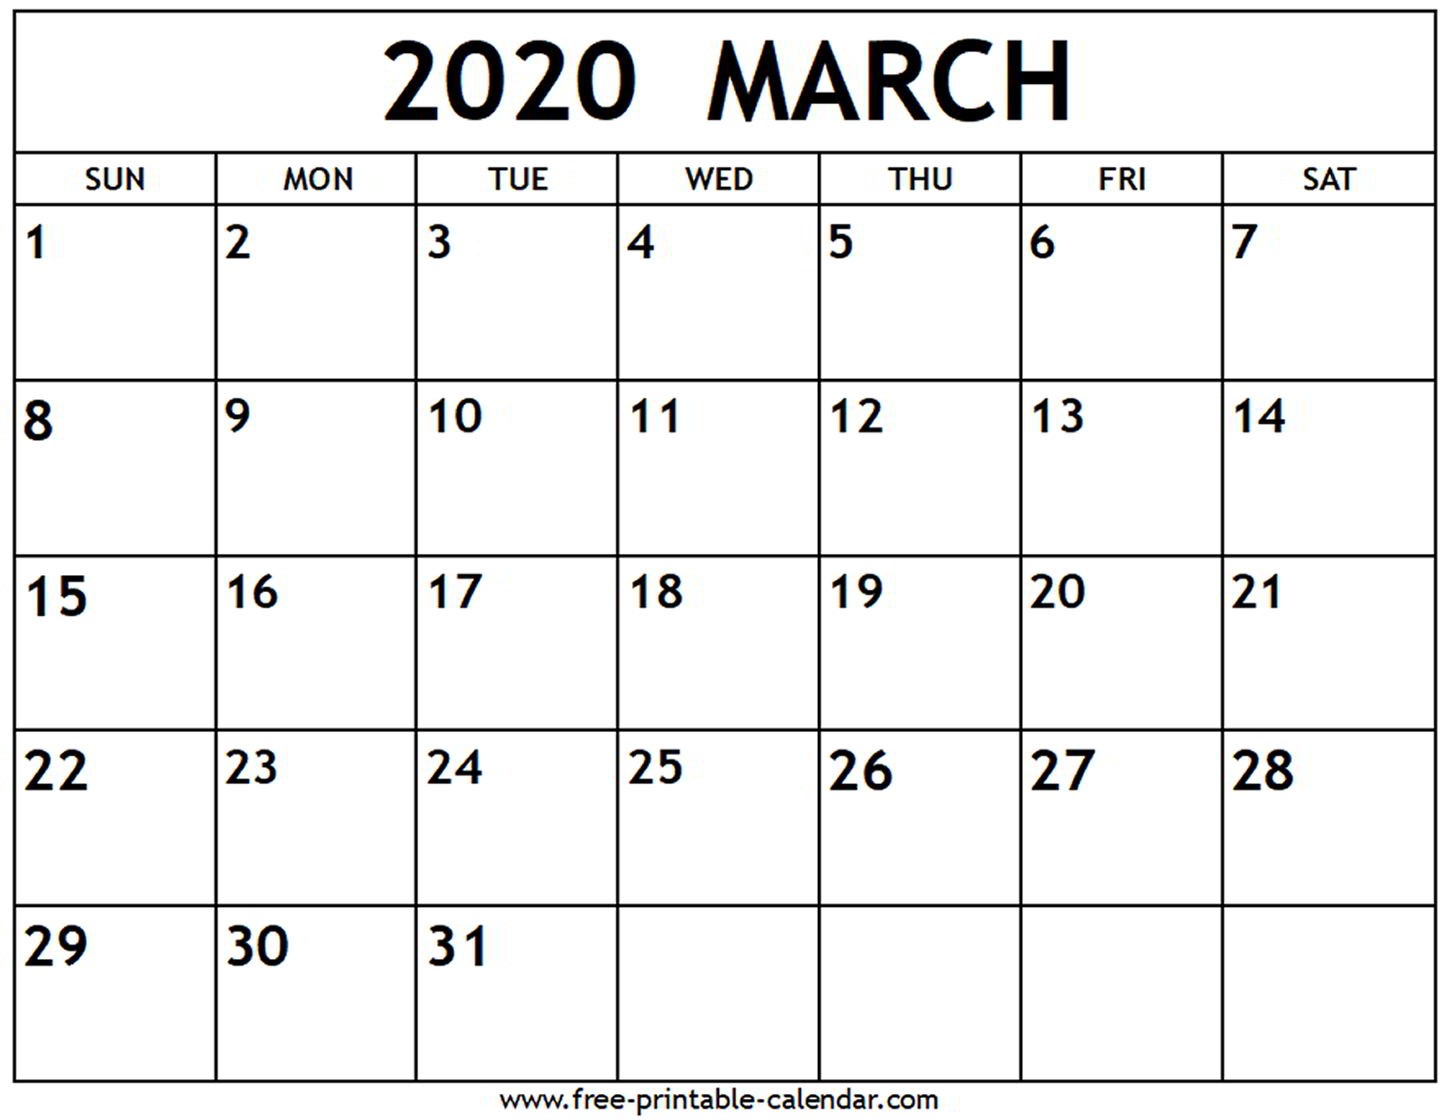 march 2020 calendar free printable calendar com